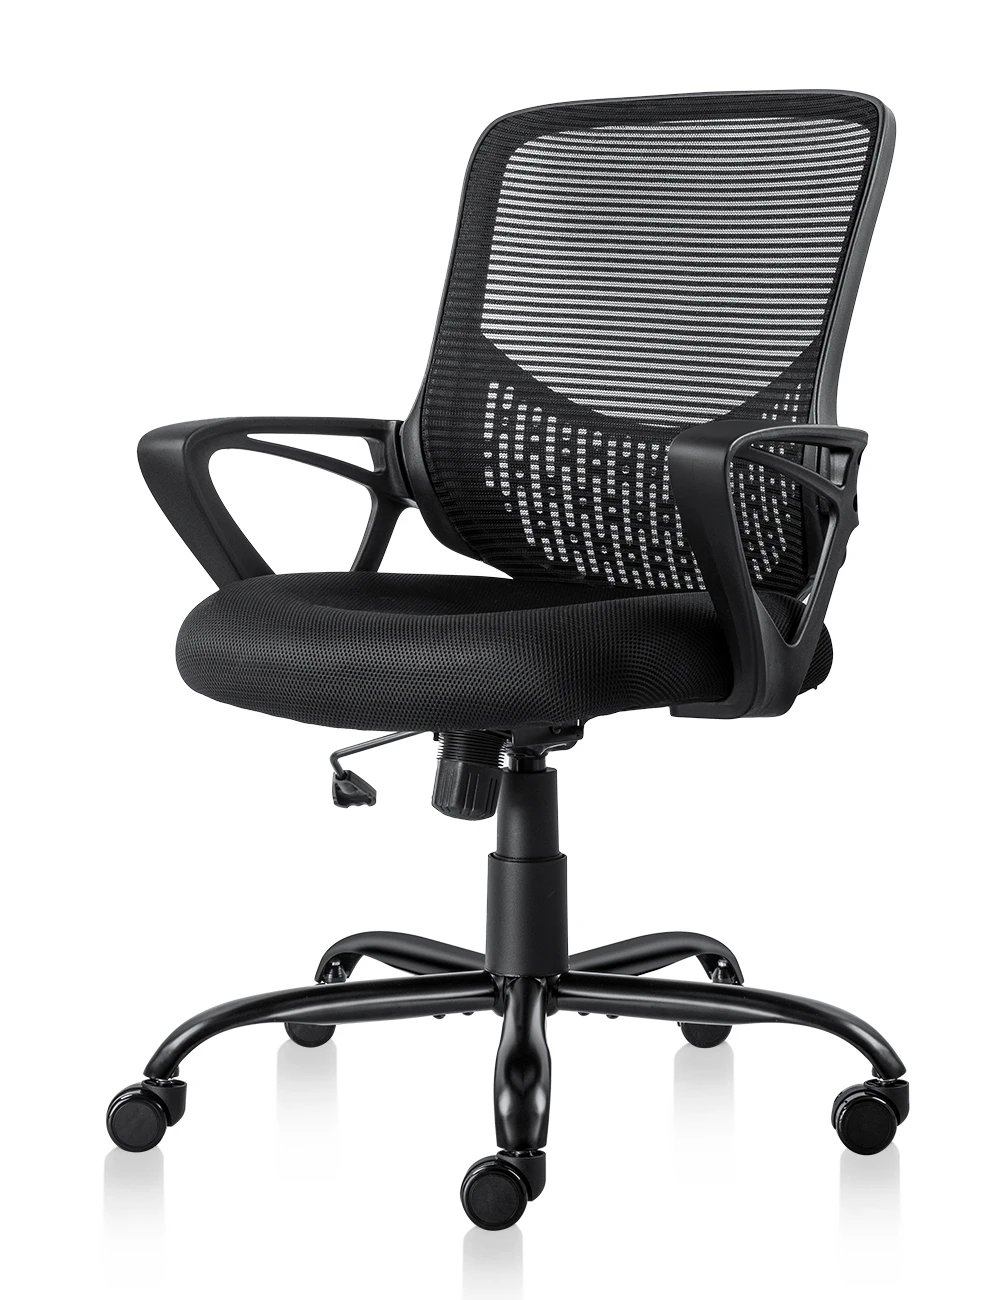 Кресло офисное спинка сетка. Кресло sberfin1. Кресло офисное / Ergo / черный пластик/черная сетка/черная ткань. Кресло прак-tik офисное с сетчитой спинкой. Офисный стул с сеткой Azzo.